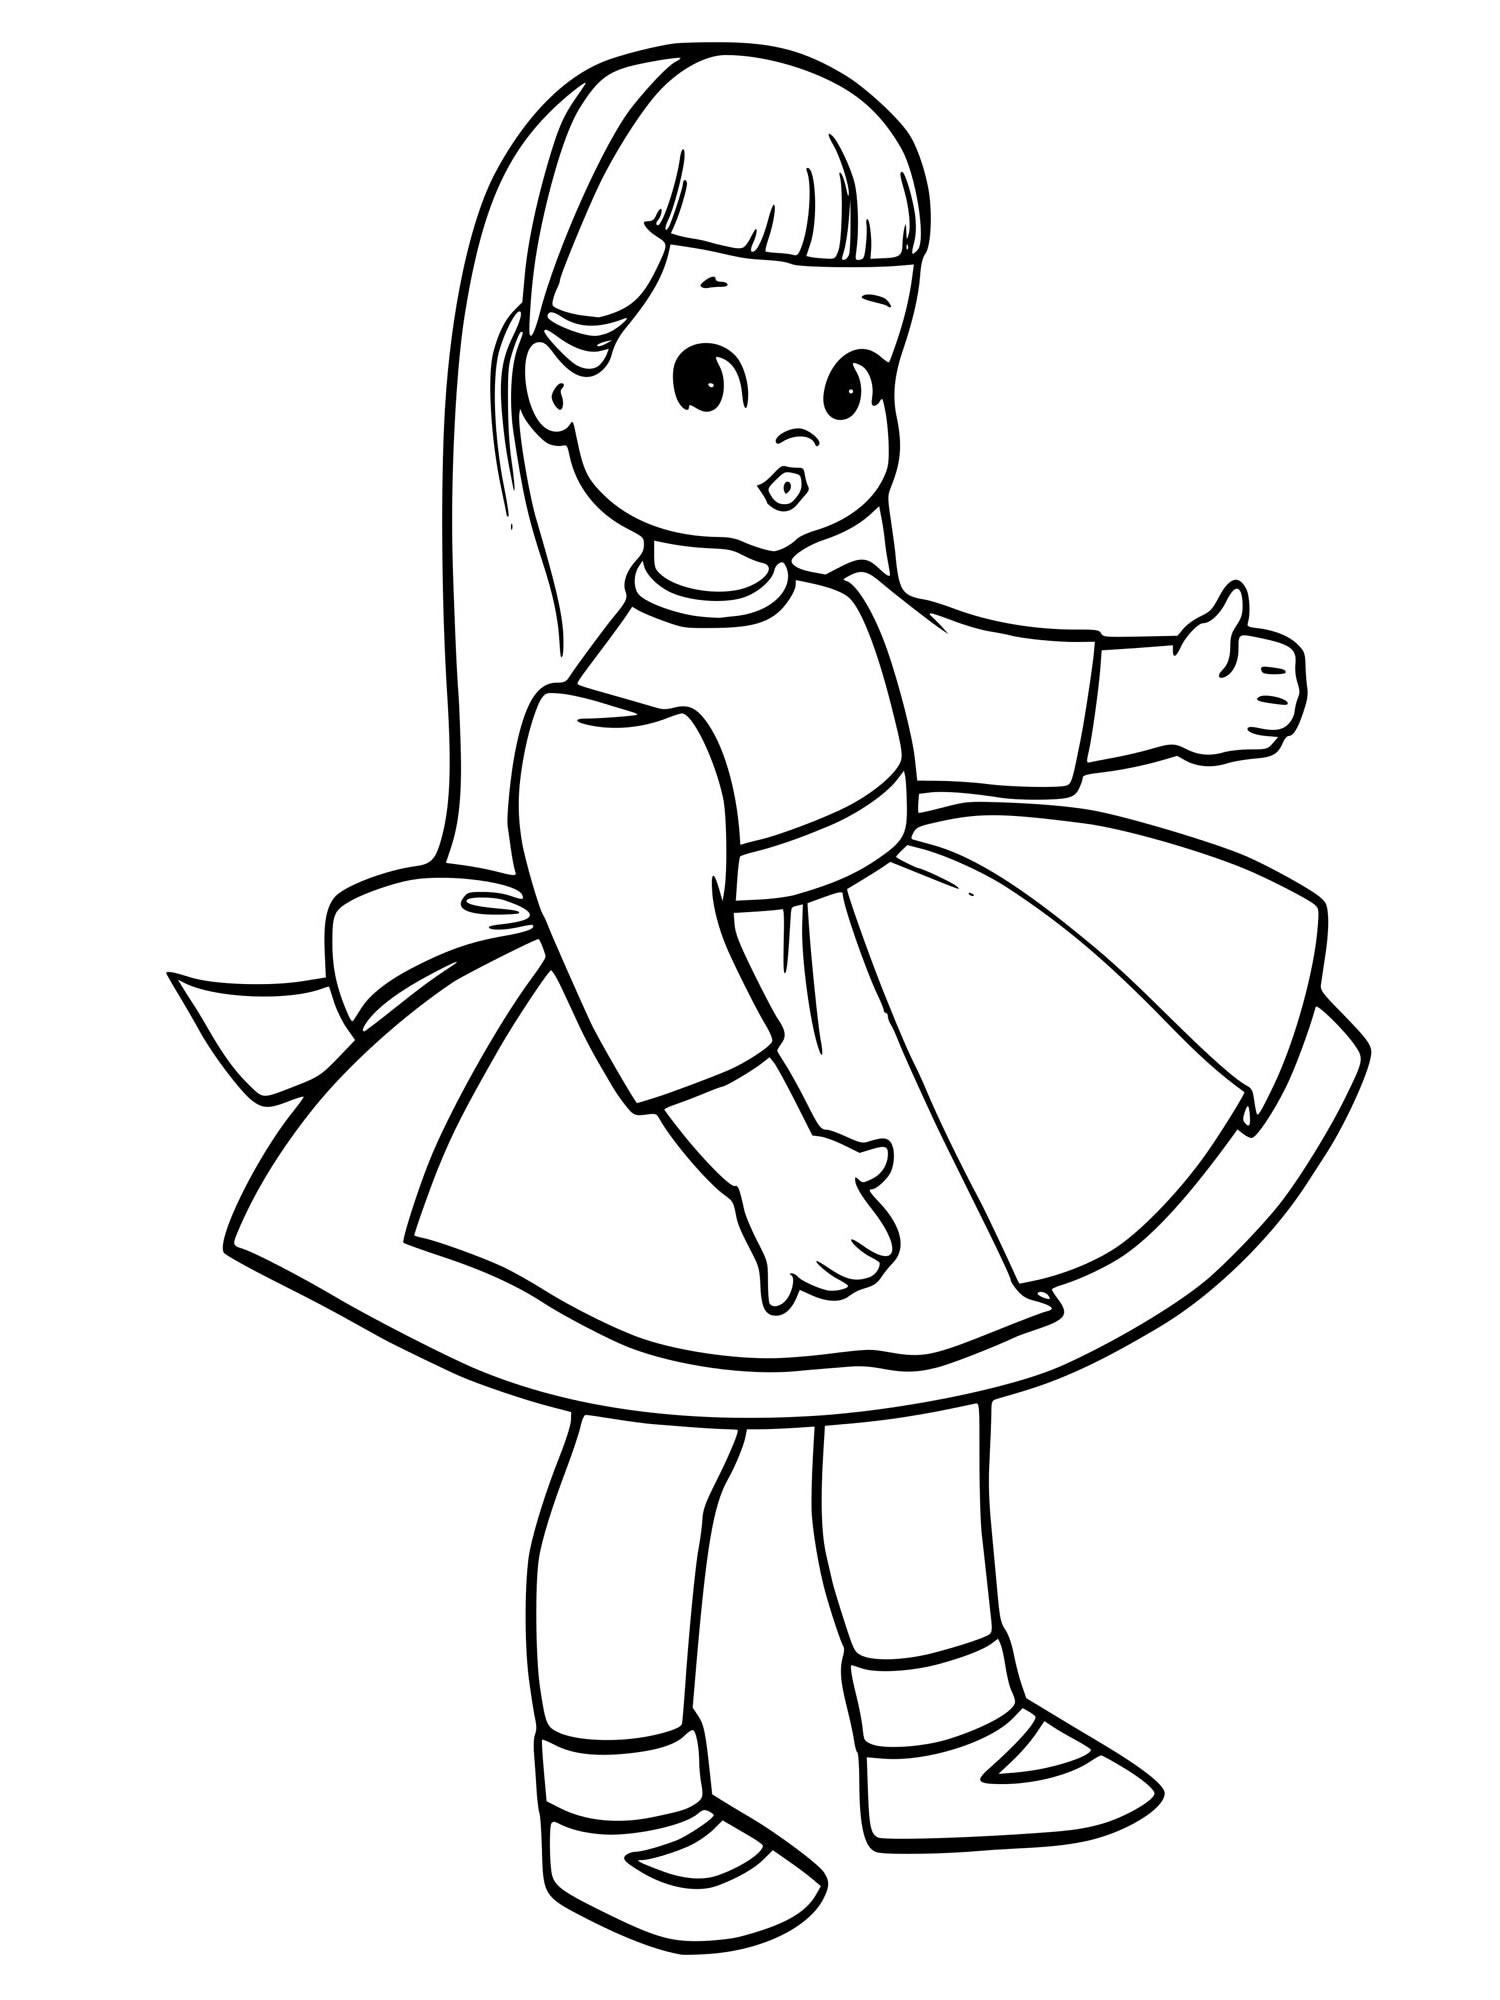 Раскраска кукла лол в платье и с бантиком на голове (fancy) для девочек распечатать бесплатно